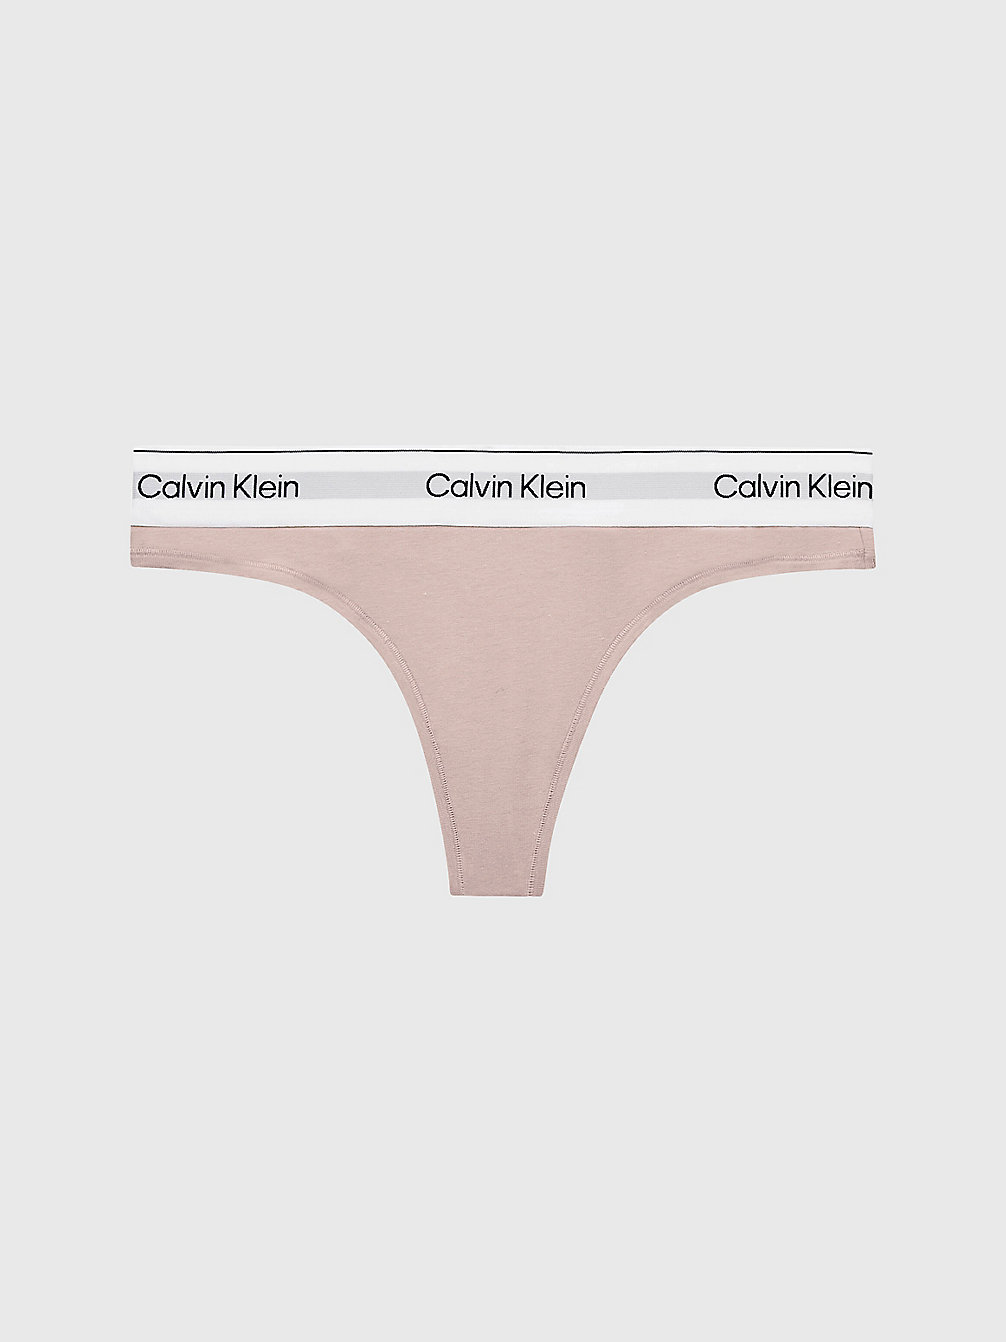 CEDAR > String – Modern Cotton > undefined Damen - Calvin Klein